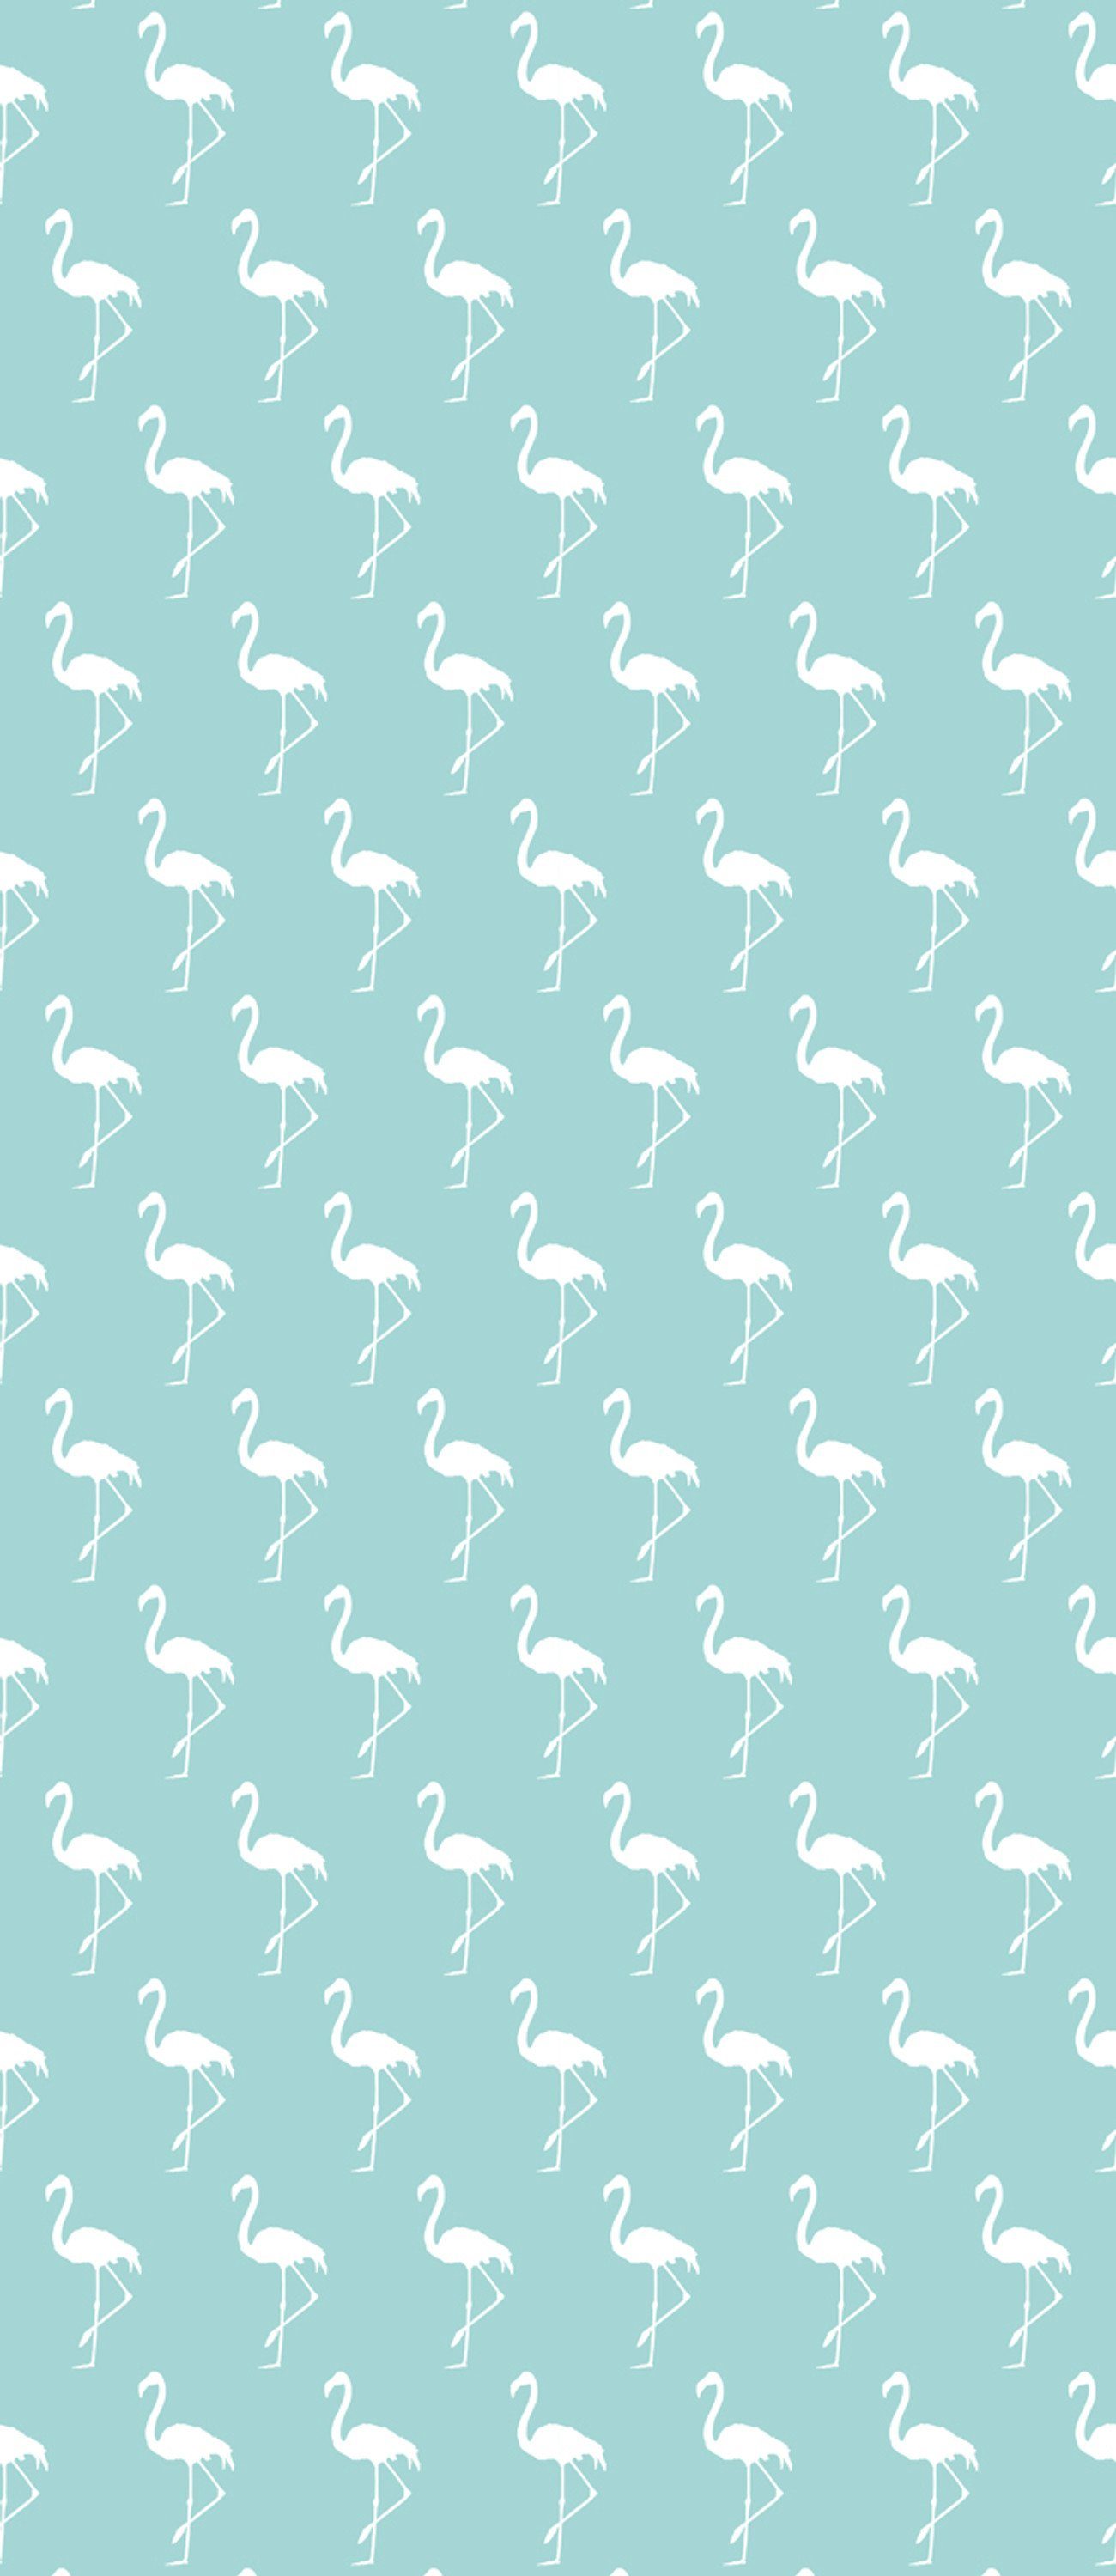 - - - Liegestuhl St., Flamingo - cm Gartenstuhl queence Sonnenliege, ca. Gartenliege Lehne verstellbar 120x60 1 Blue 3-fach